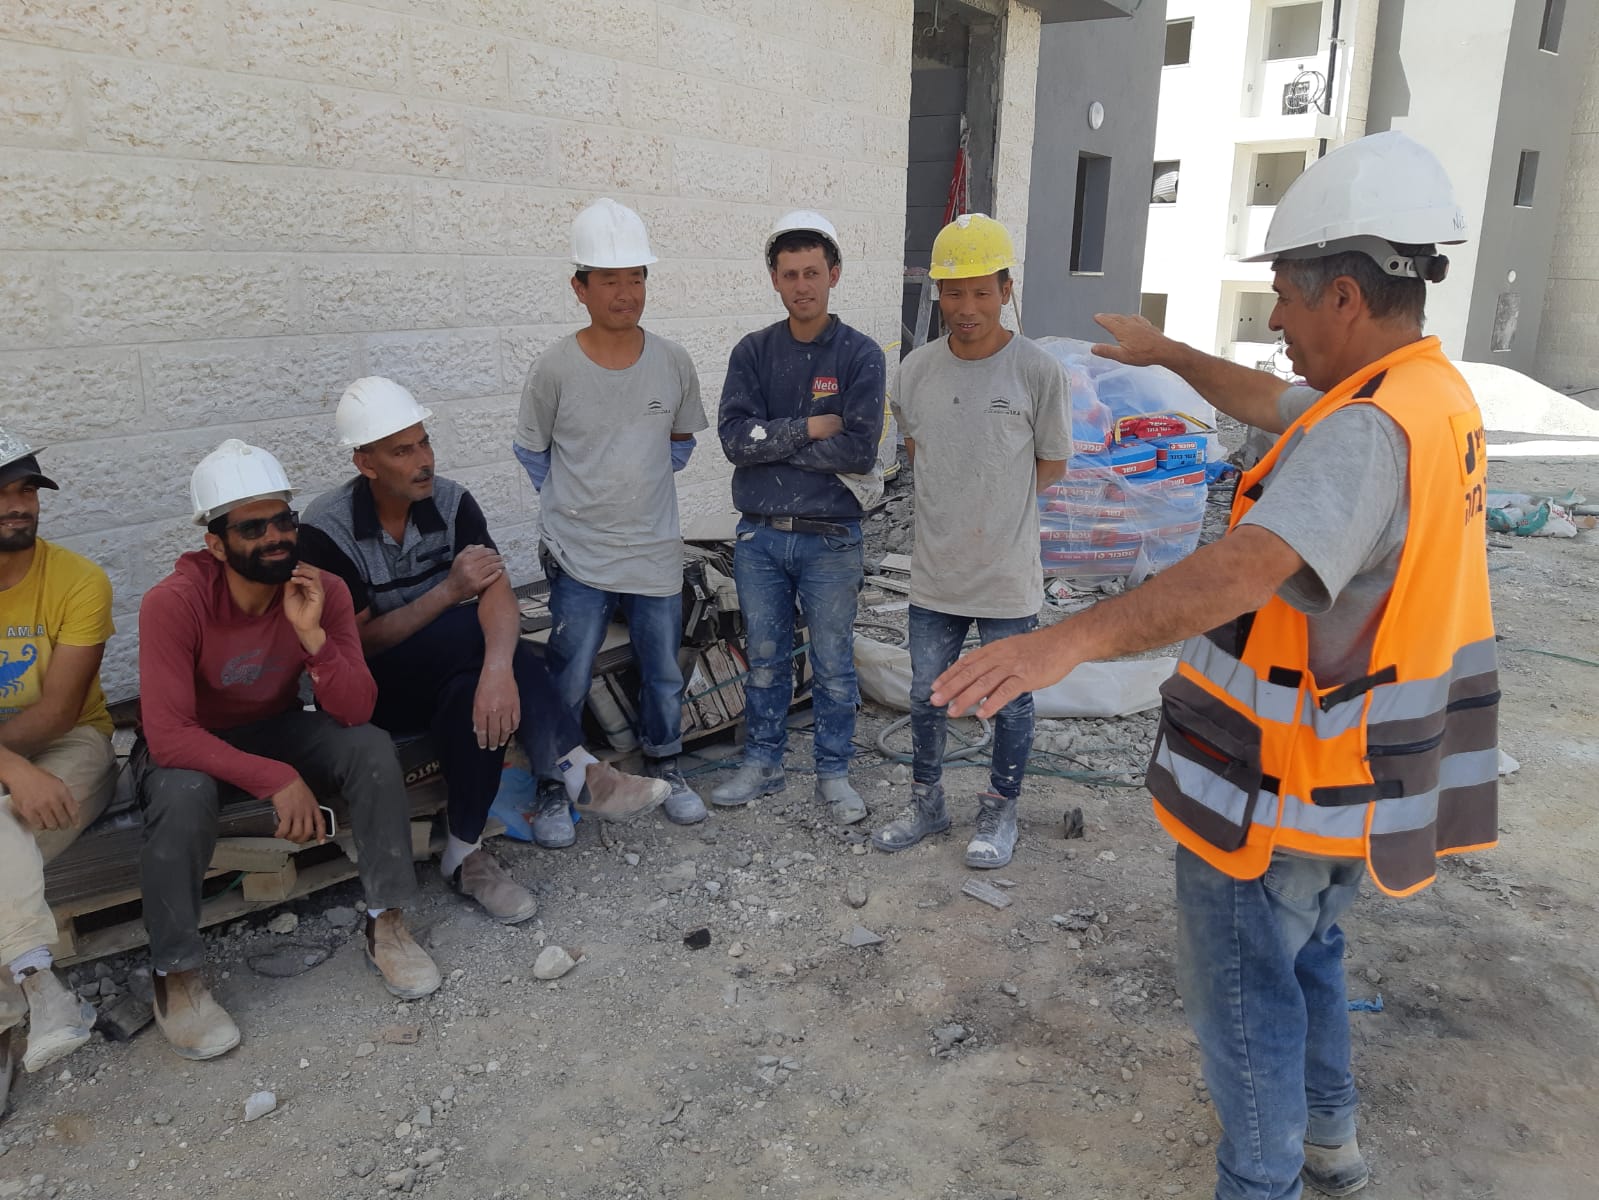 ארגון קבלני הנגב שם את הבטיחות במקום הראשון ומכשיר עוזרי בטיחות לאתרי בנייה